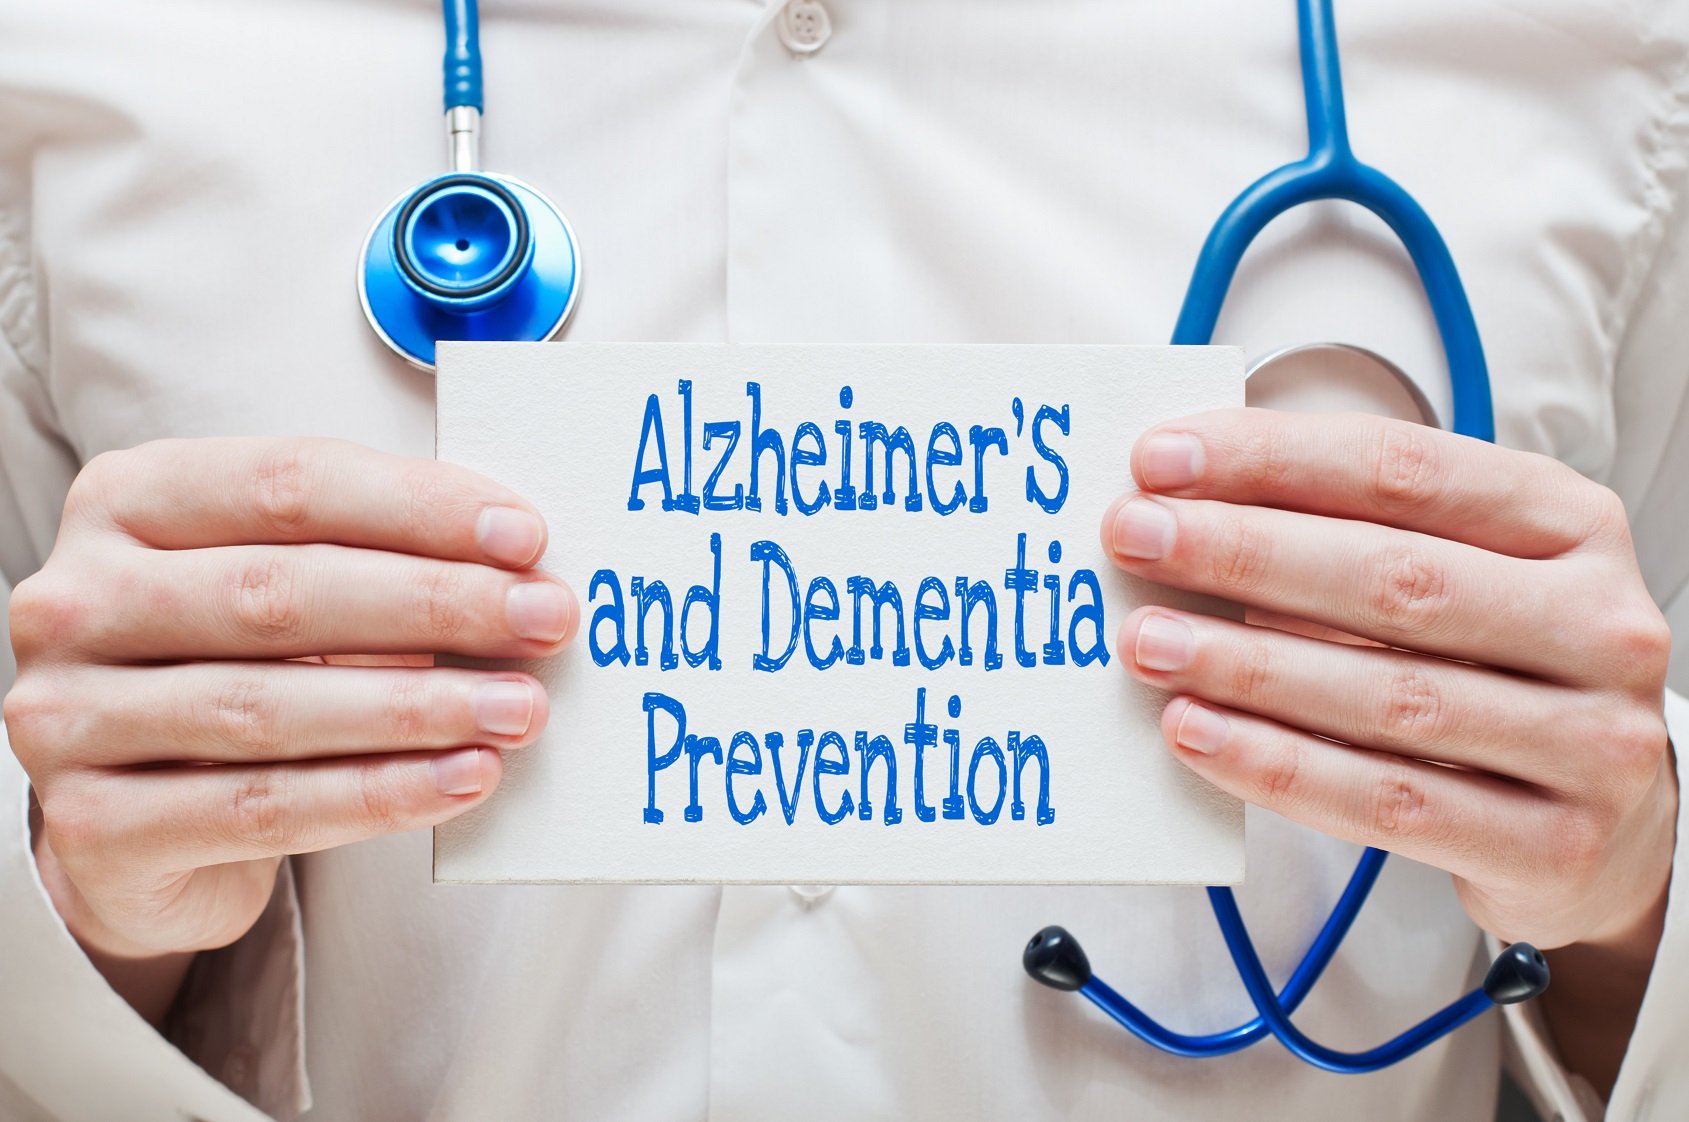 Prevent Alzheimer's, prevent Dementia